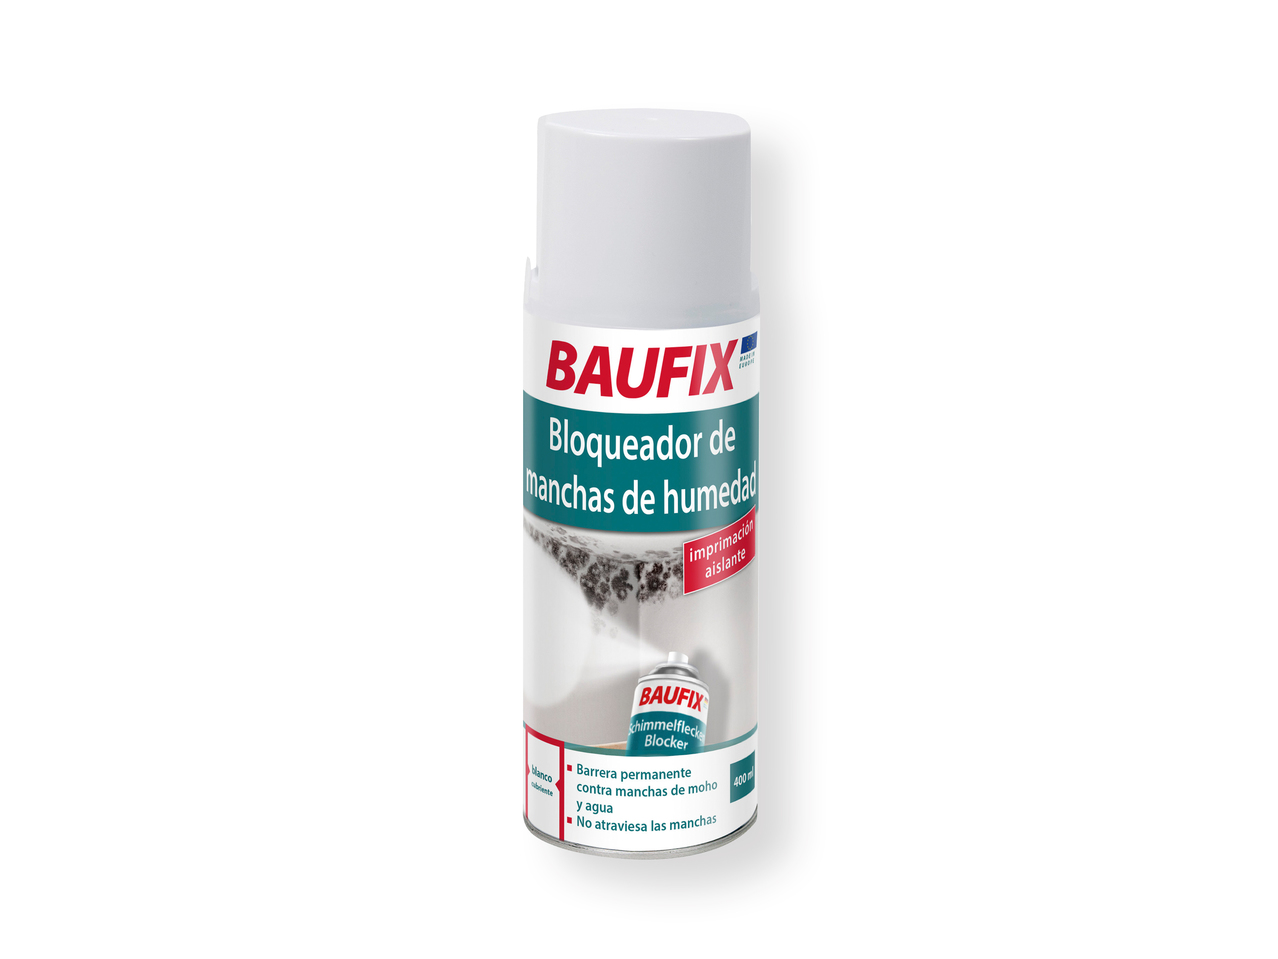 'Baufix(R)' Espray bloqueador de manchas de humedad